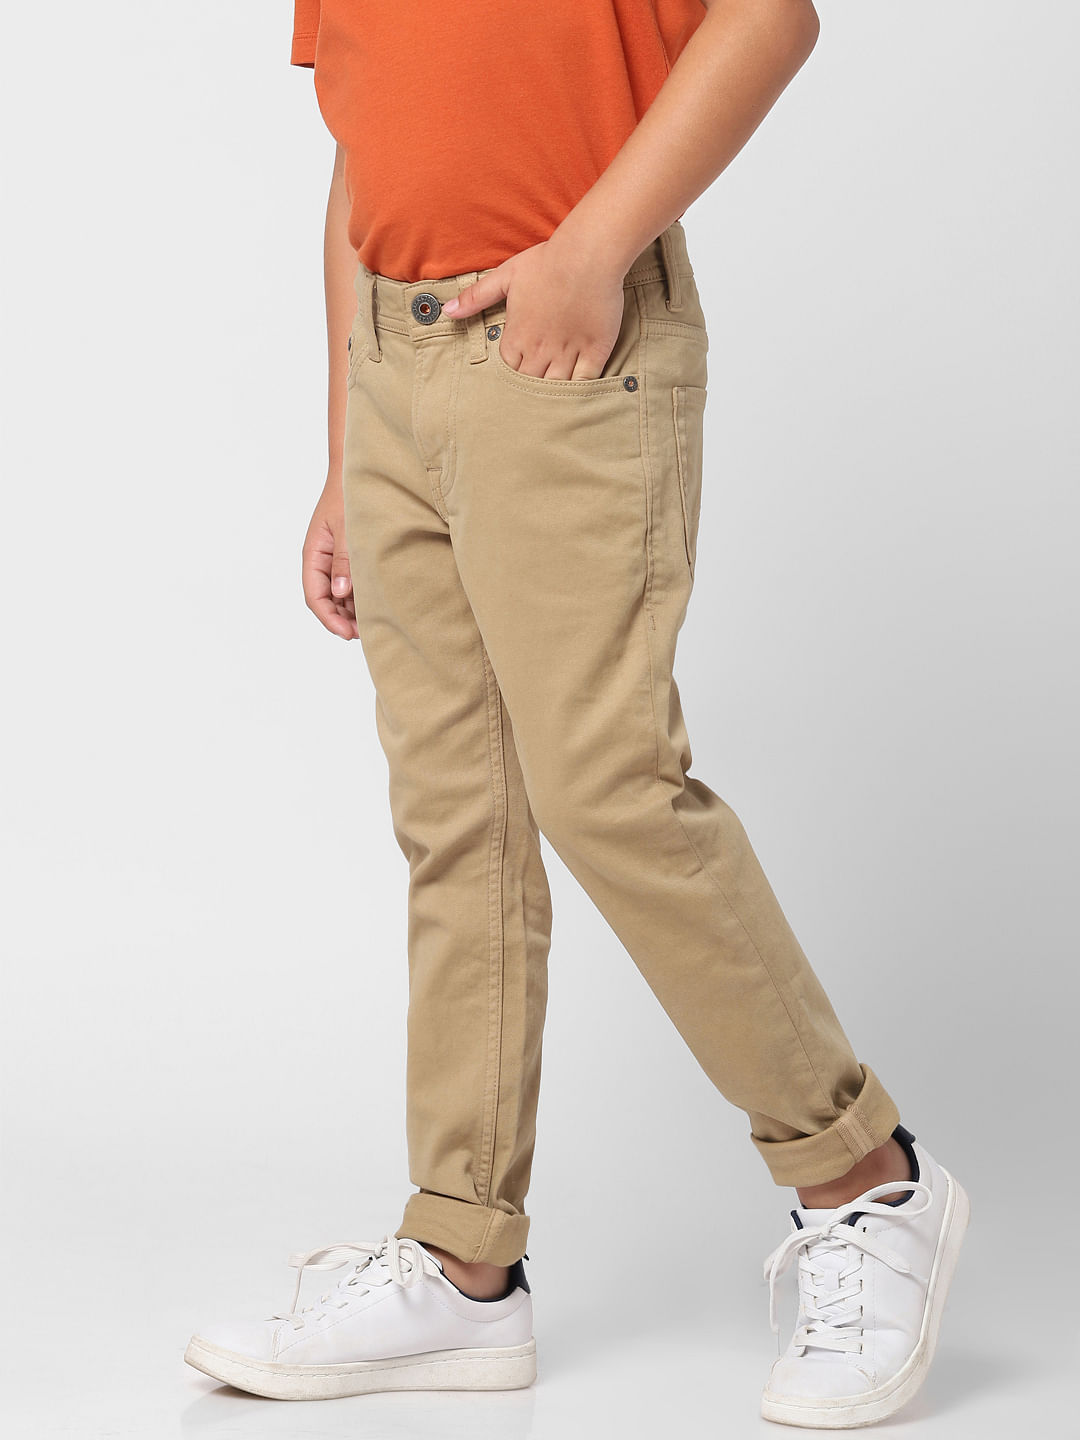 Men's Brown Dress Pants - Dress Pants & Slacks - Express